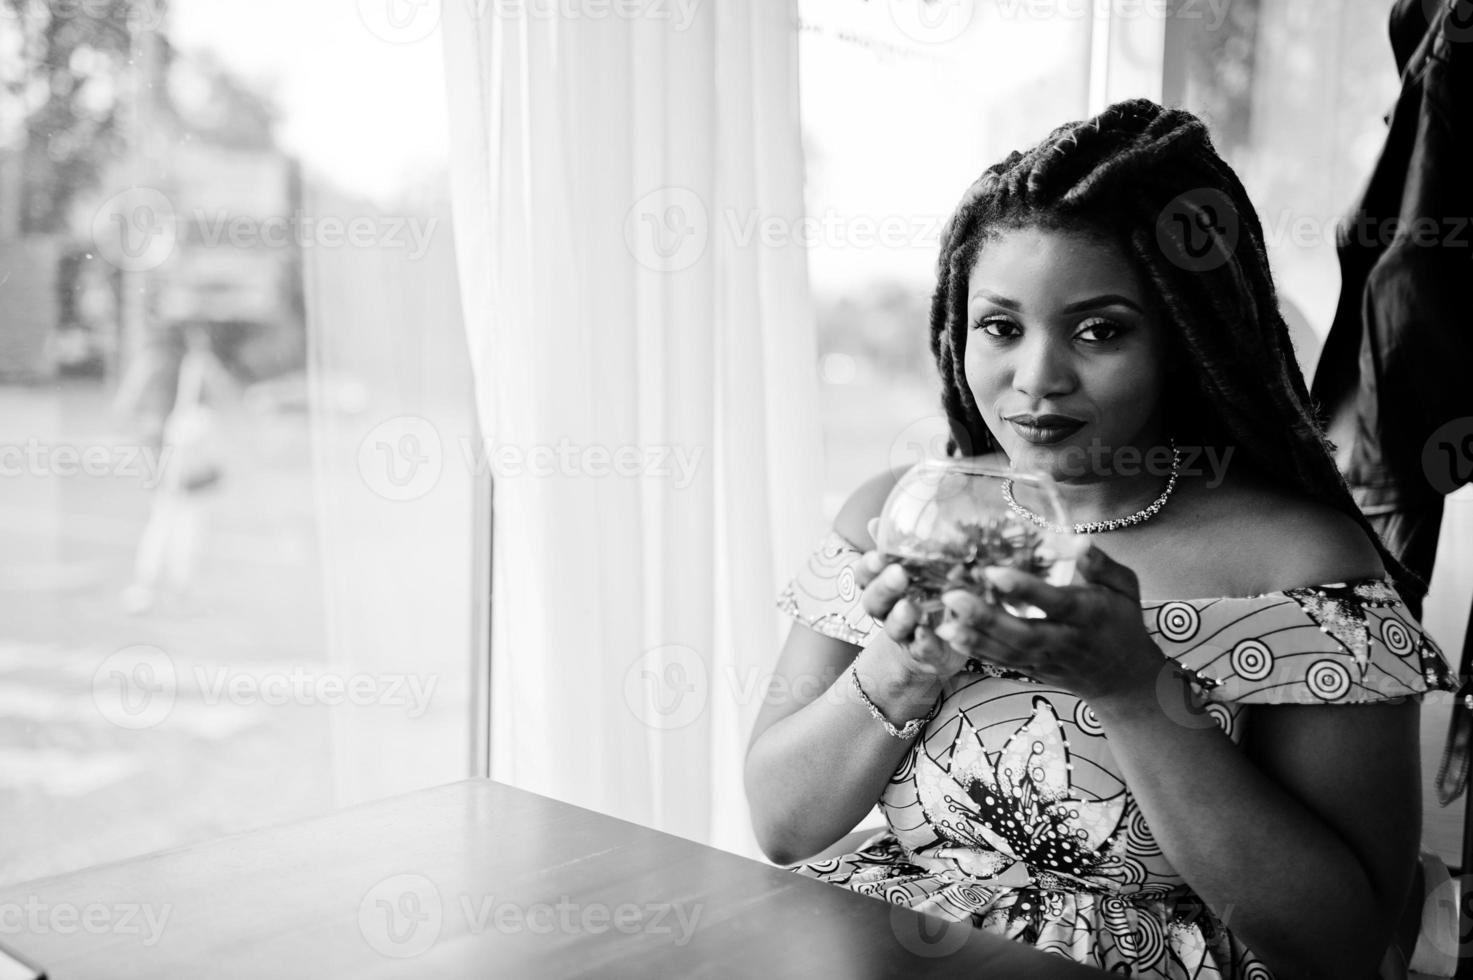 linda garota afro-americana de pequena altura com dreadlocks, use vestido amarelo colorido, sentado no café com flor no vidro. Preto e branco. foto